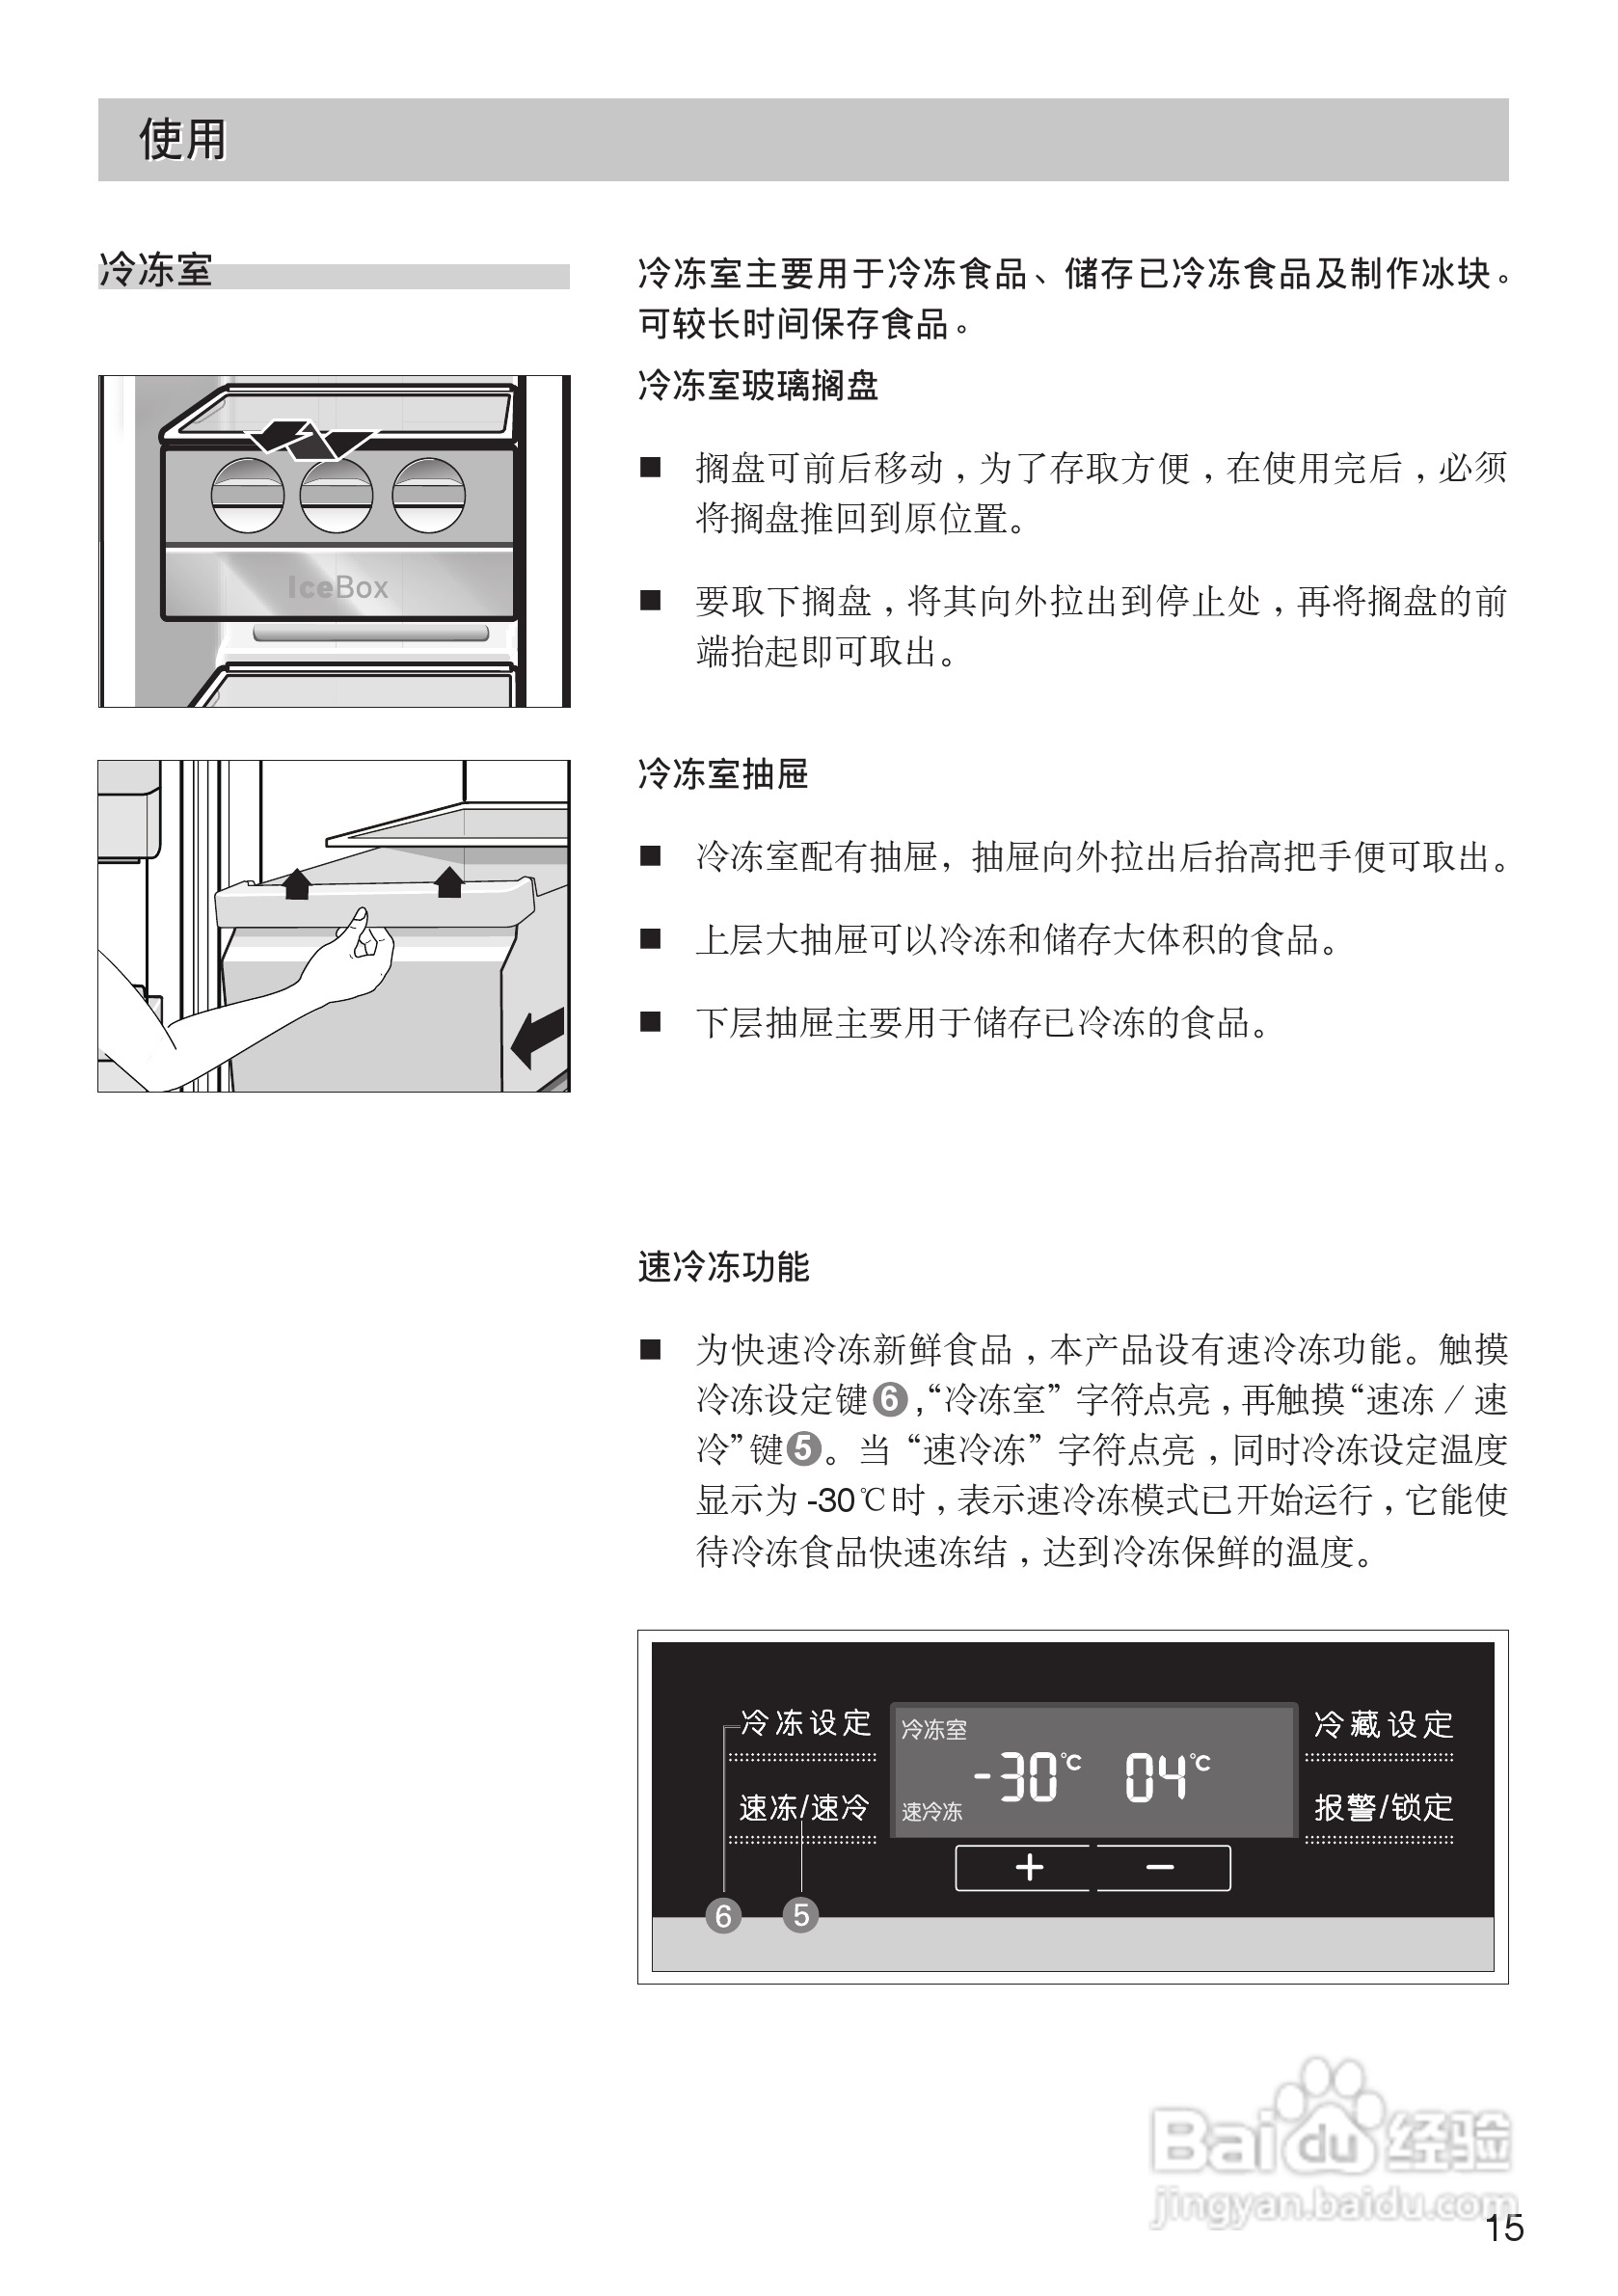 西门子冰箱调温度教程图片